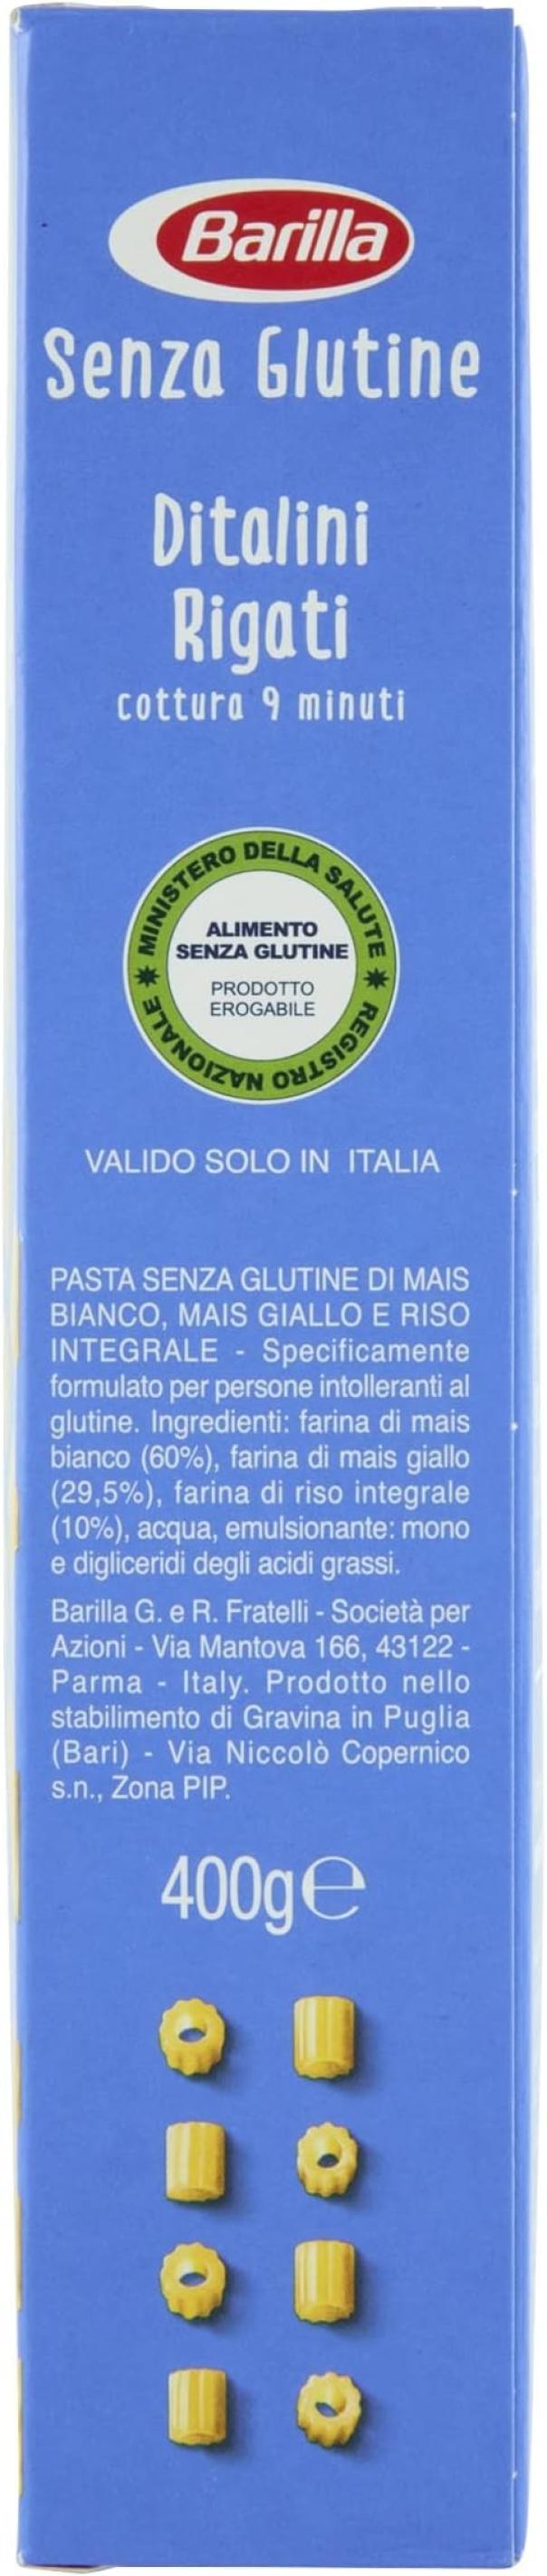 pasta-ditalini-senza-glutine-barilla-400gr-4